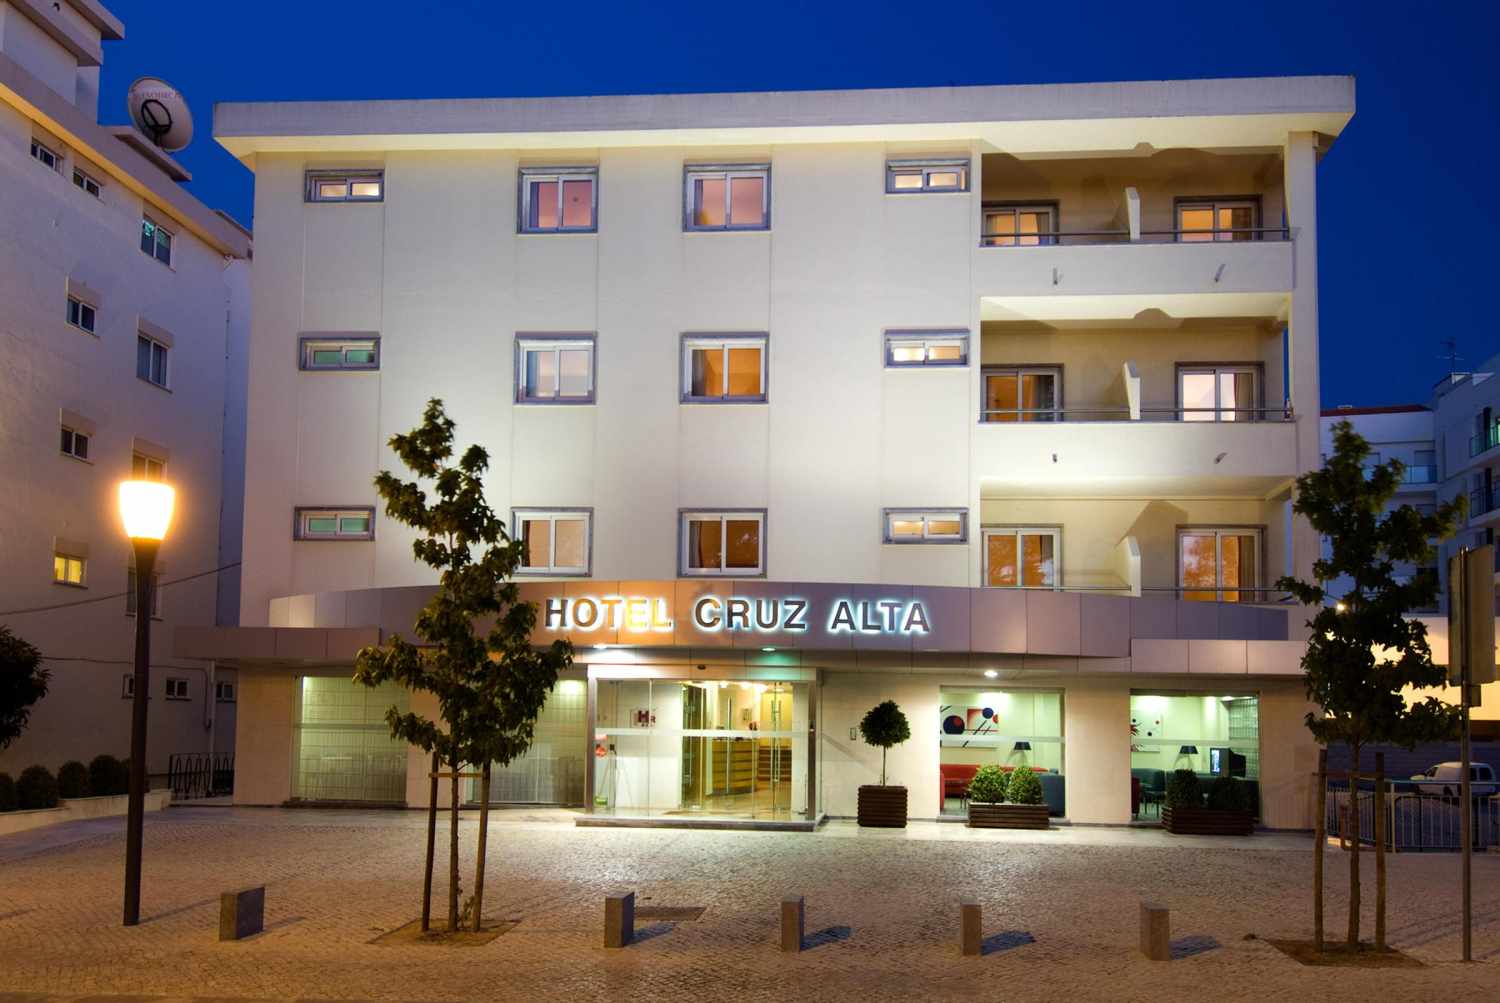 Hotel Cruz Alta, Fatima, Costa de Prata, Portugal